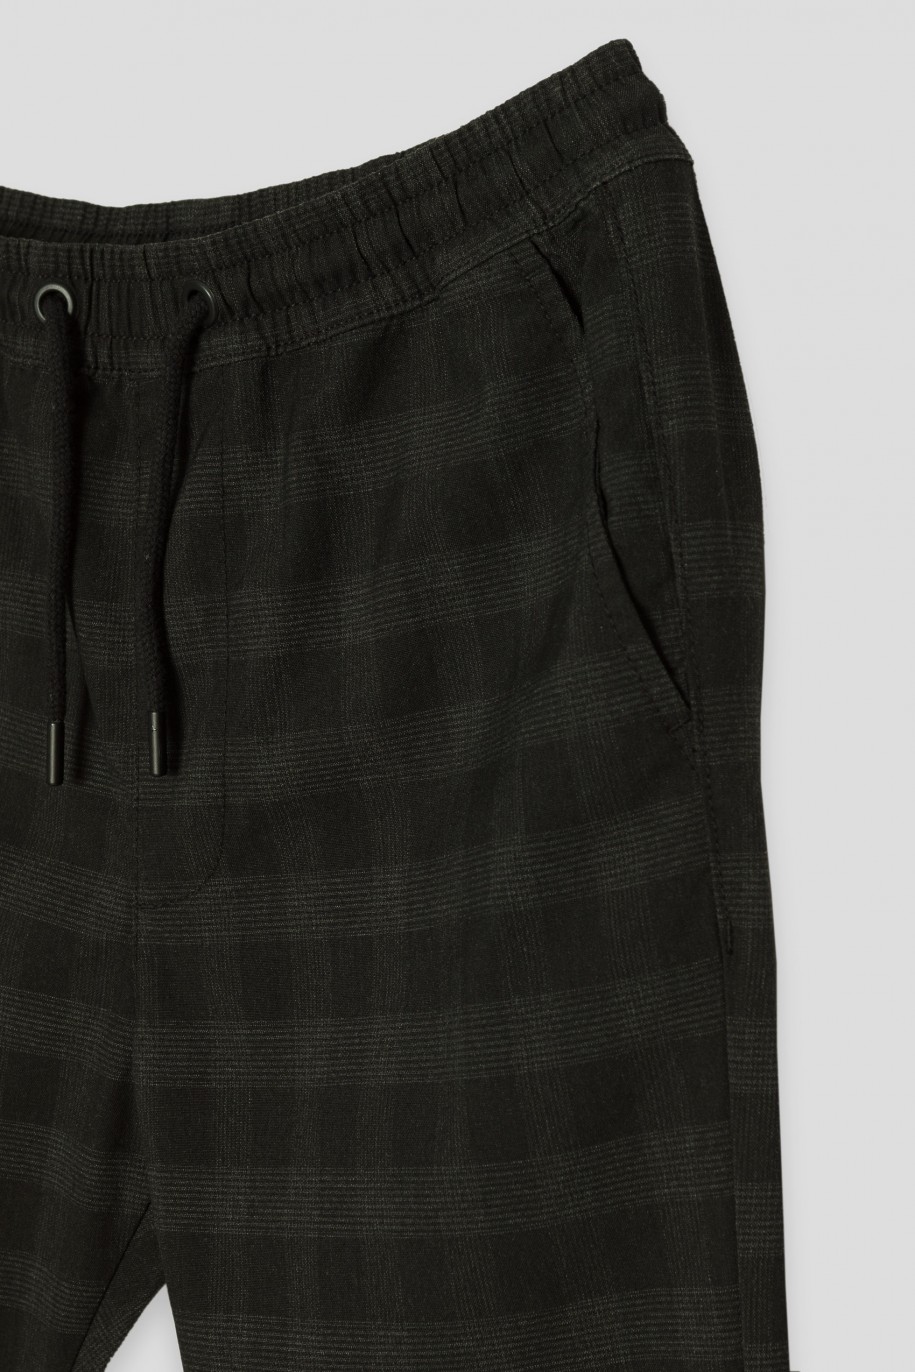 Czarne spodnie w kratę typu joggery - 42904